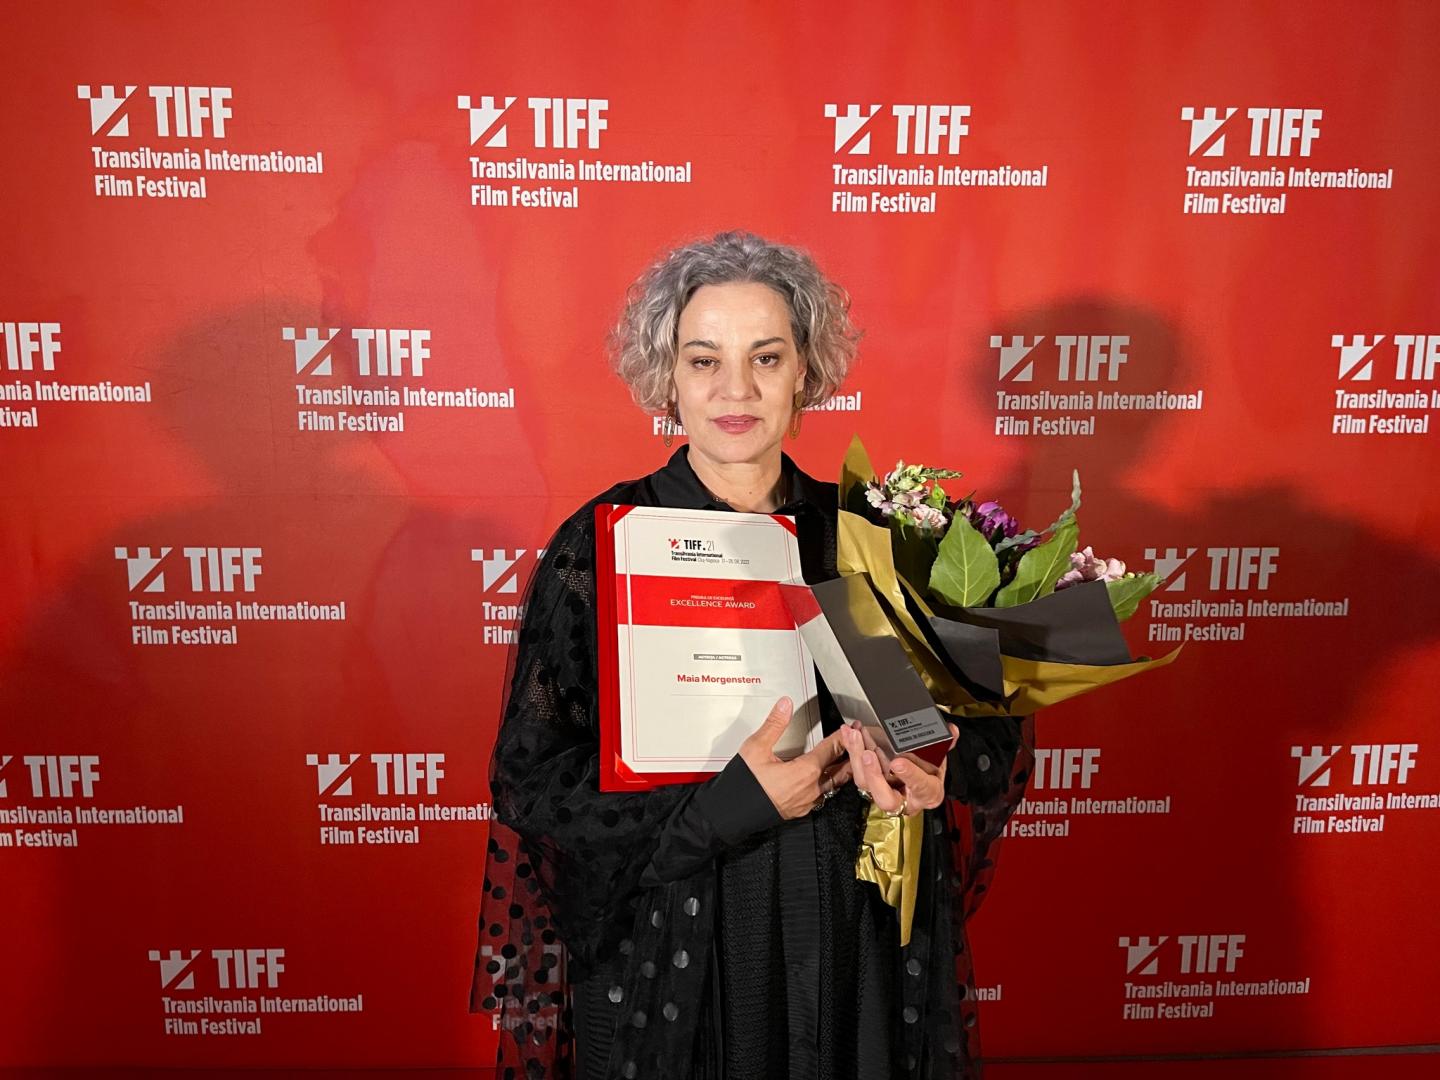 Maia Morgenstern, Premiul de Excelență la TIFF 2022: "Sunt profund recunoscătoare TIFF şi tuturor celor care au făcut posibil acest eveniment&quo